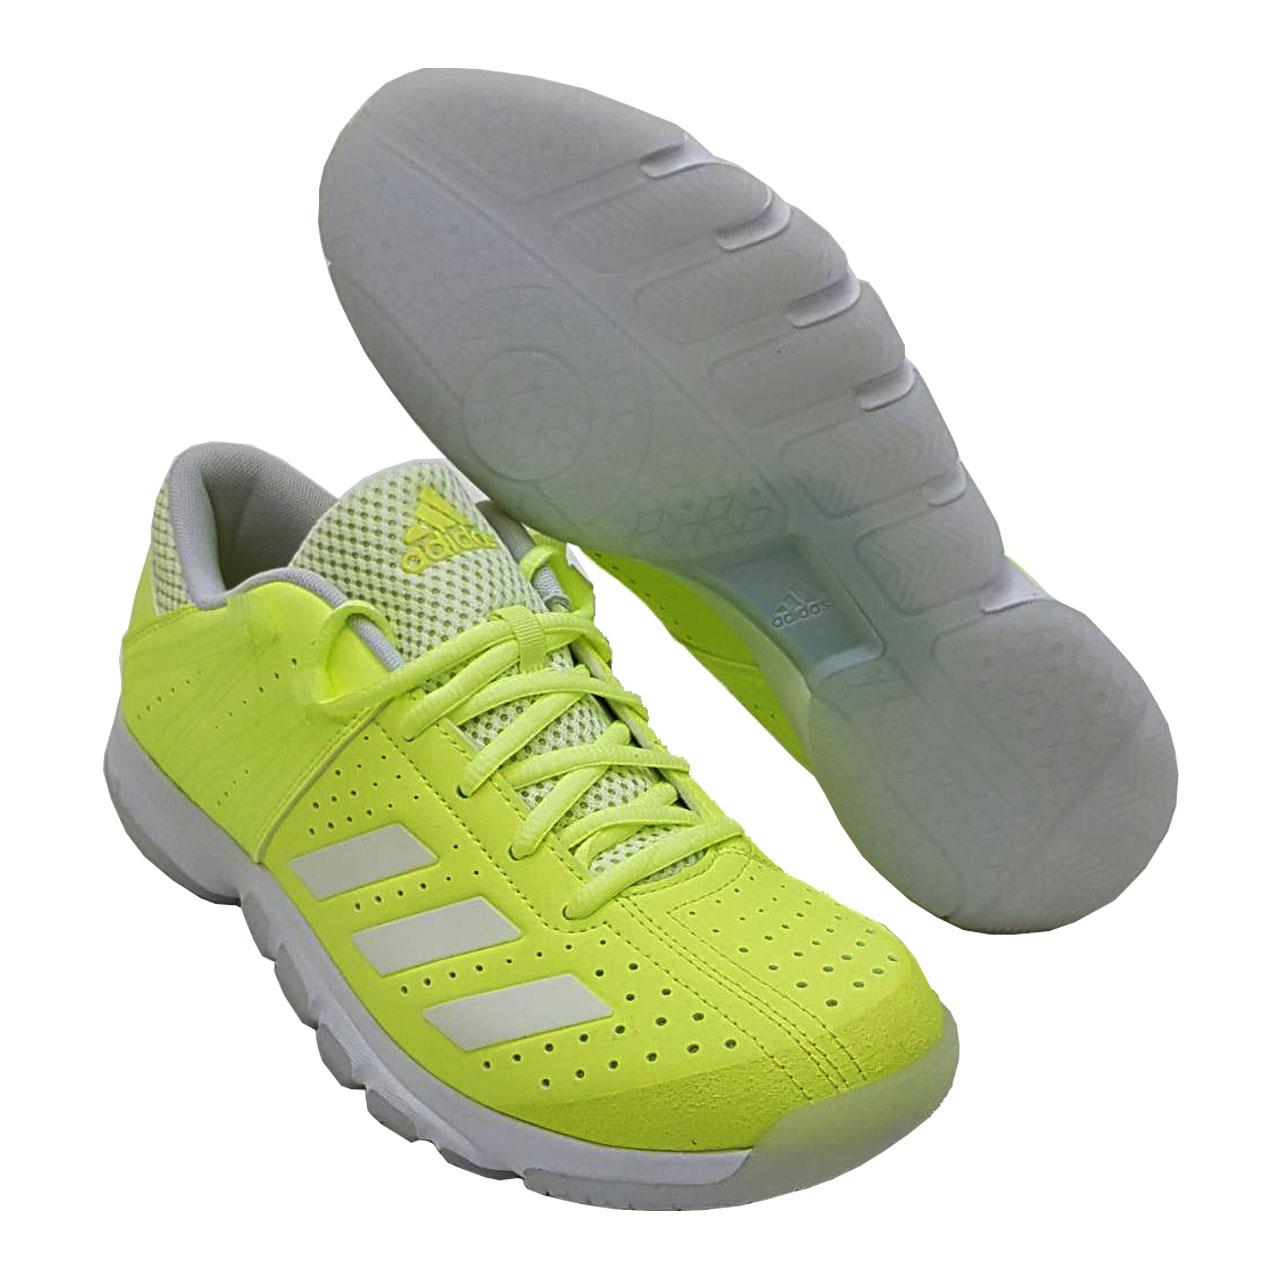 Adidas รองเท้าแบดมินตัน รุ่น WUCHT P5 HI-RES YELLOW/FTWR (สีเขียว) #รองเท้า #รองเท้าแบด #รองเท้าอดิดาส #รองเท้าAdidas #Badminton #รองเท้ากีฬา #รองเท้าผู้ชาย